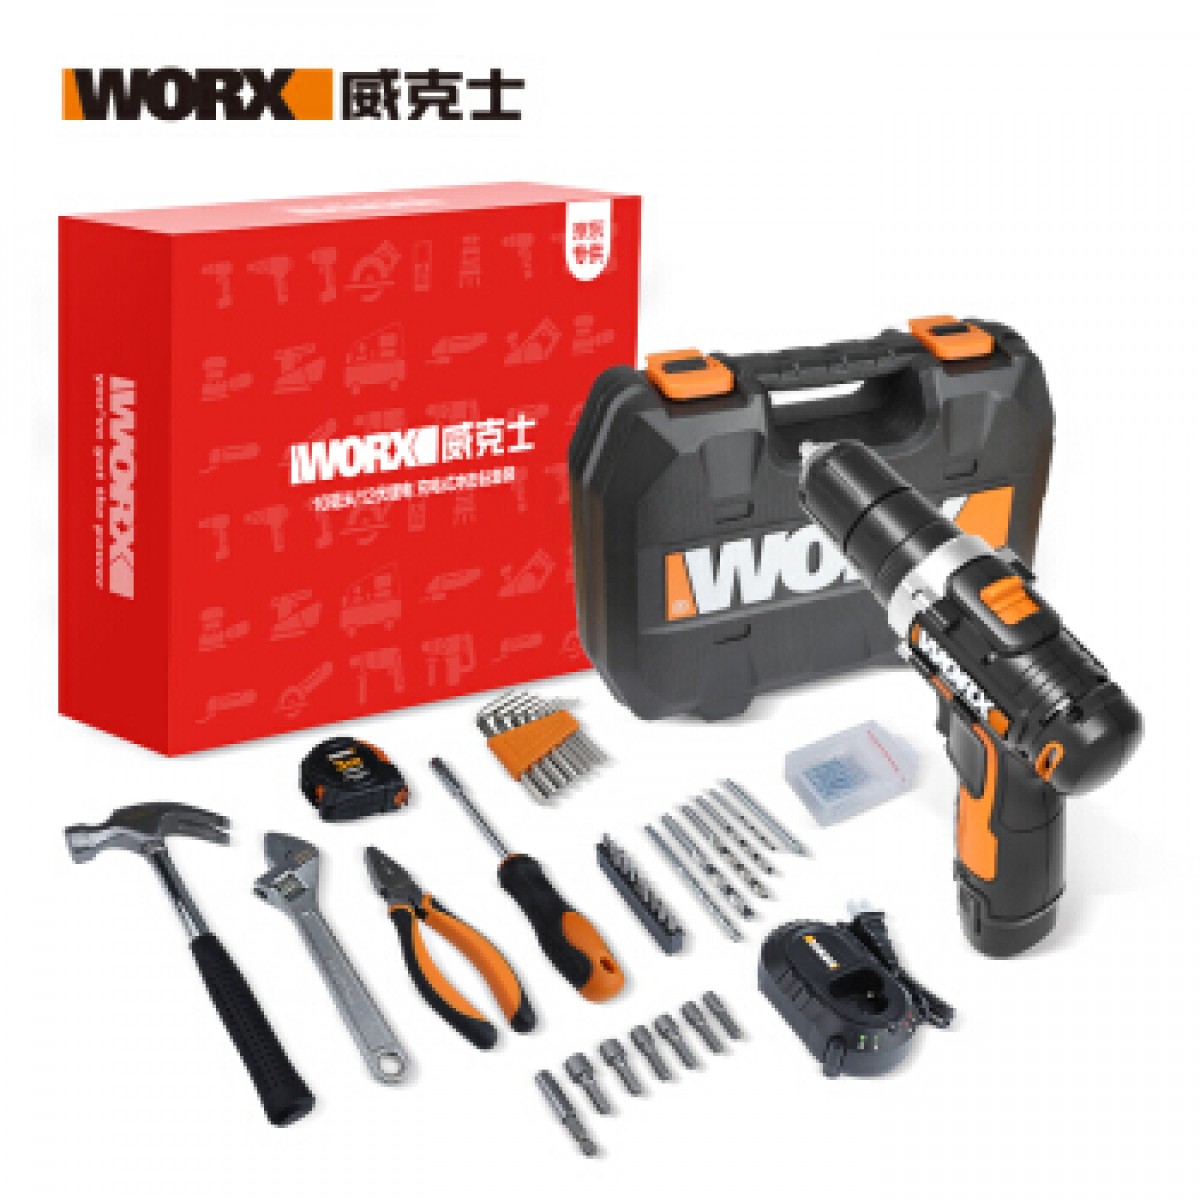 威克士(Worx)12伏锂电钻WX129.5 冲击钻家用手电钻维修套装车载木工电工工具箱59件套电动工具